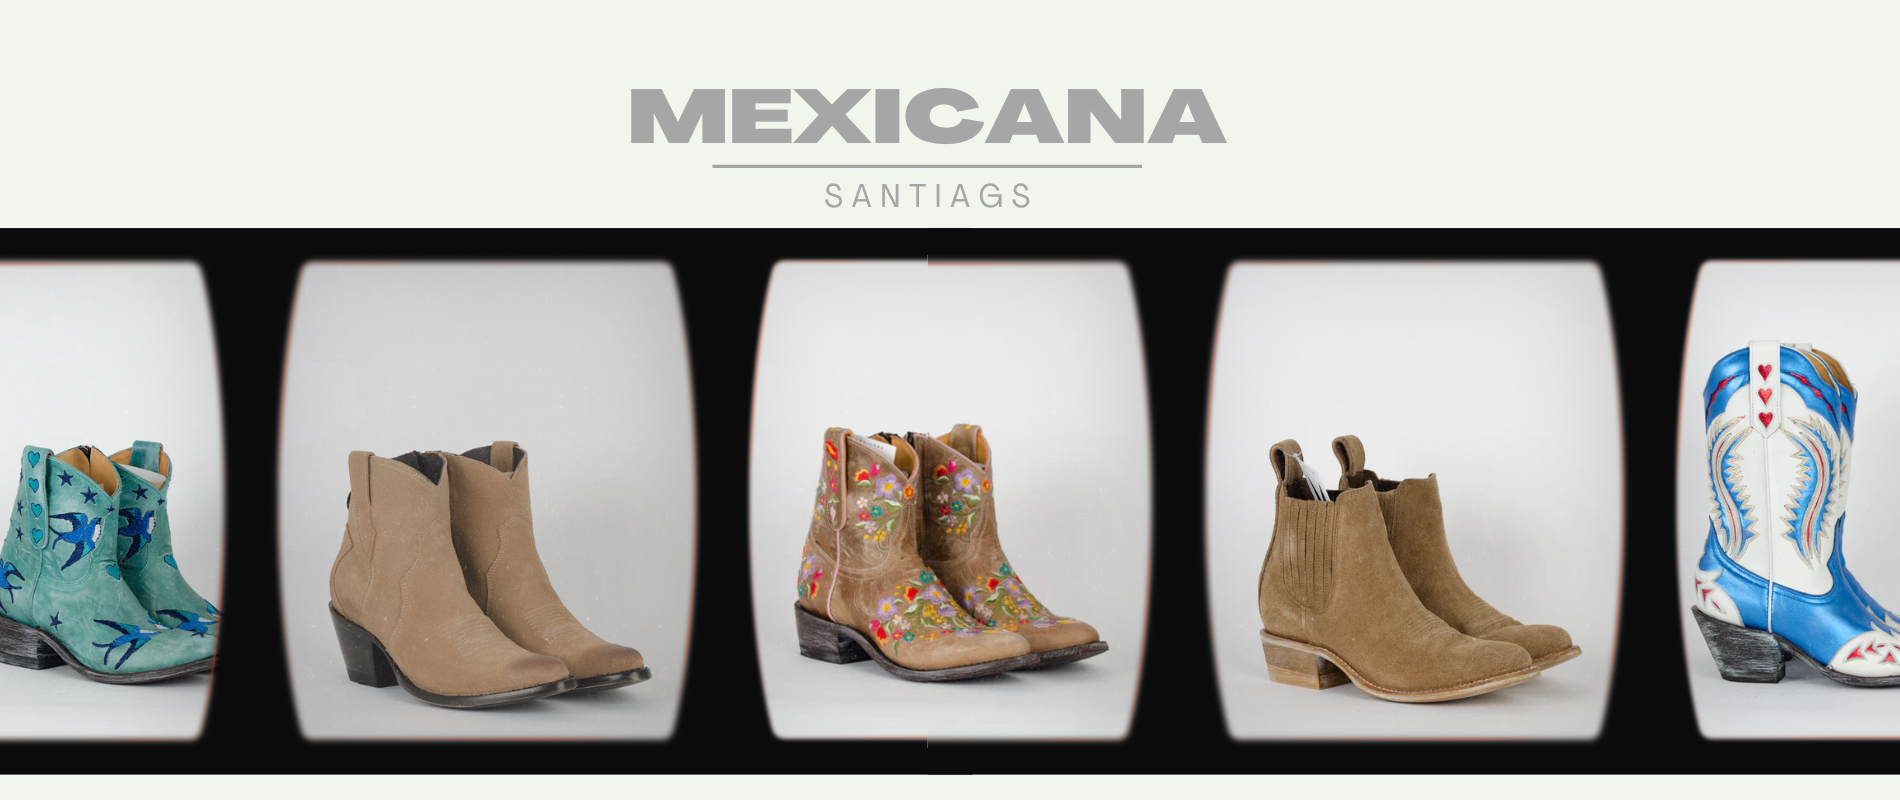 Mexicana : La marque de santiags audacieuse et tendance qui réinvente la tradition cowboy